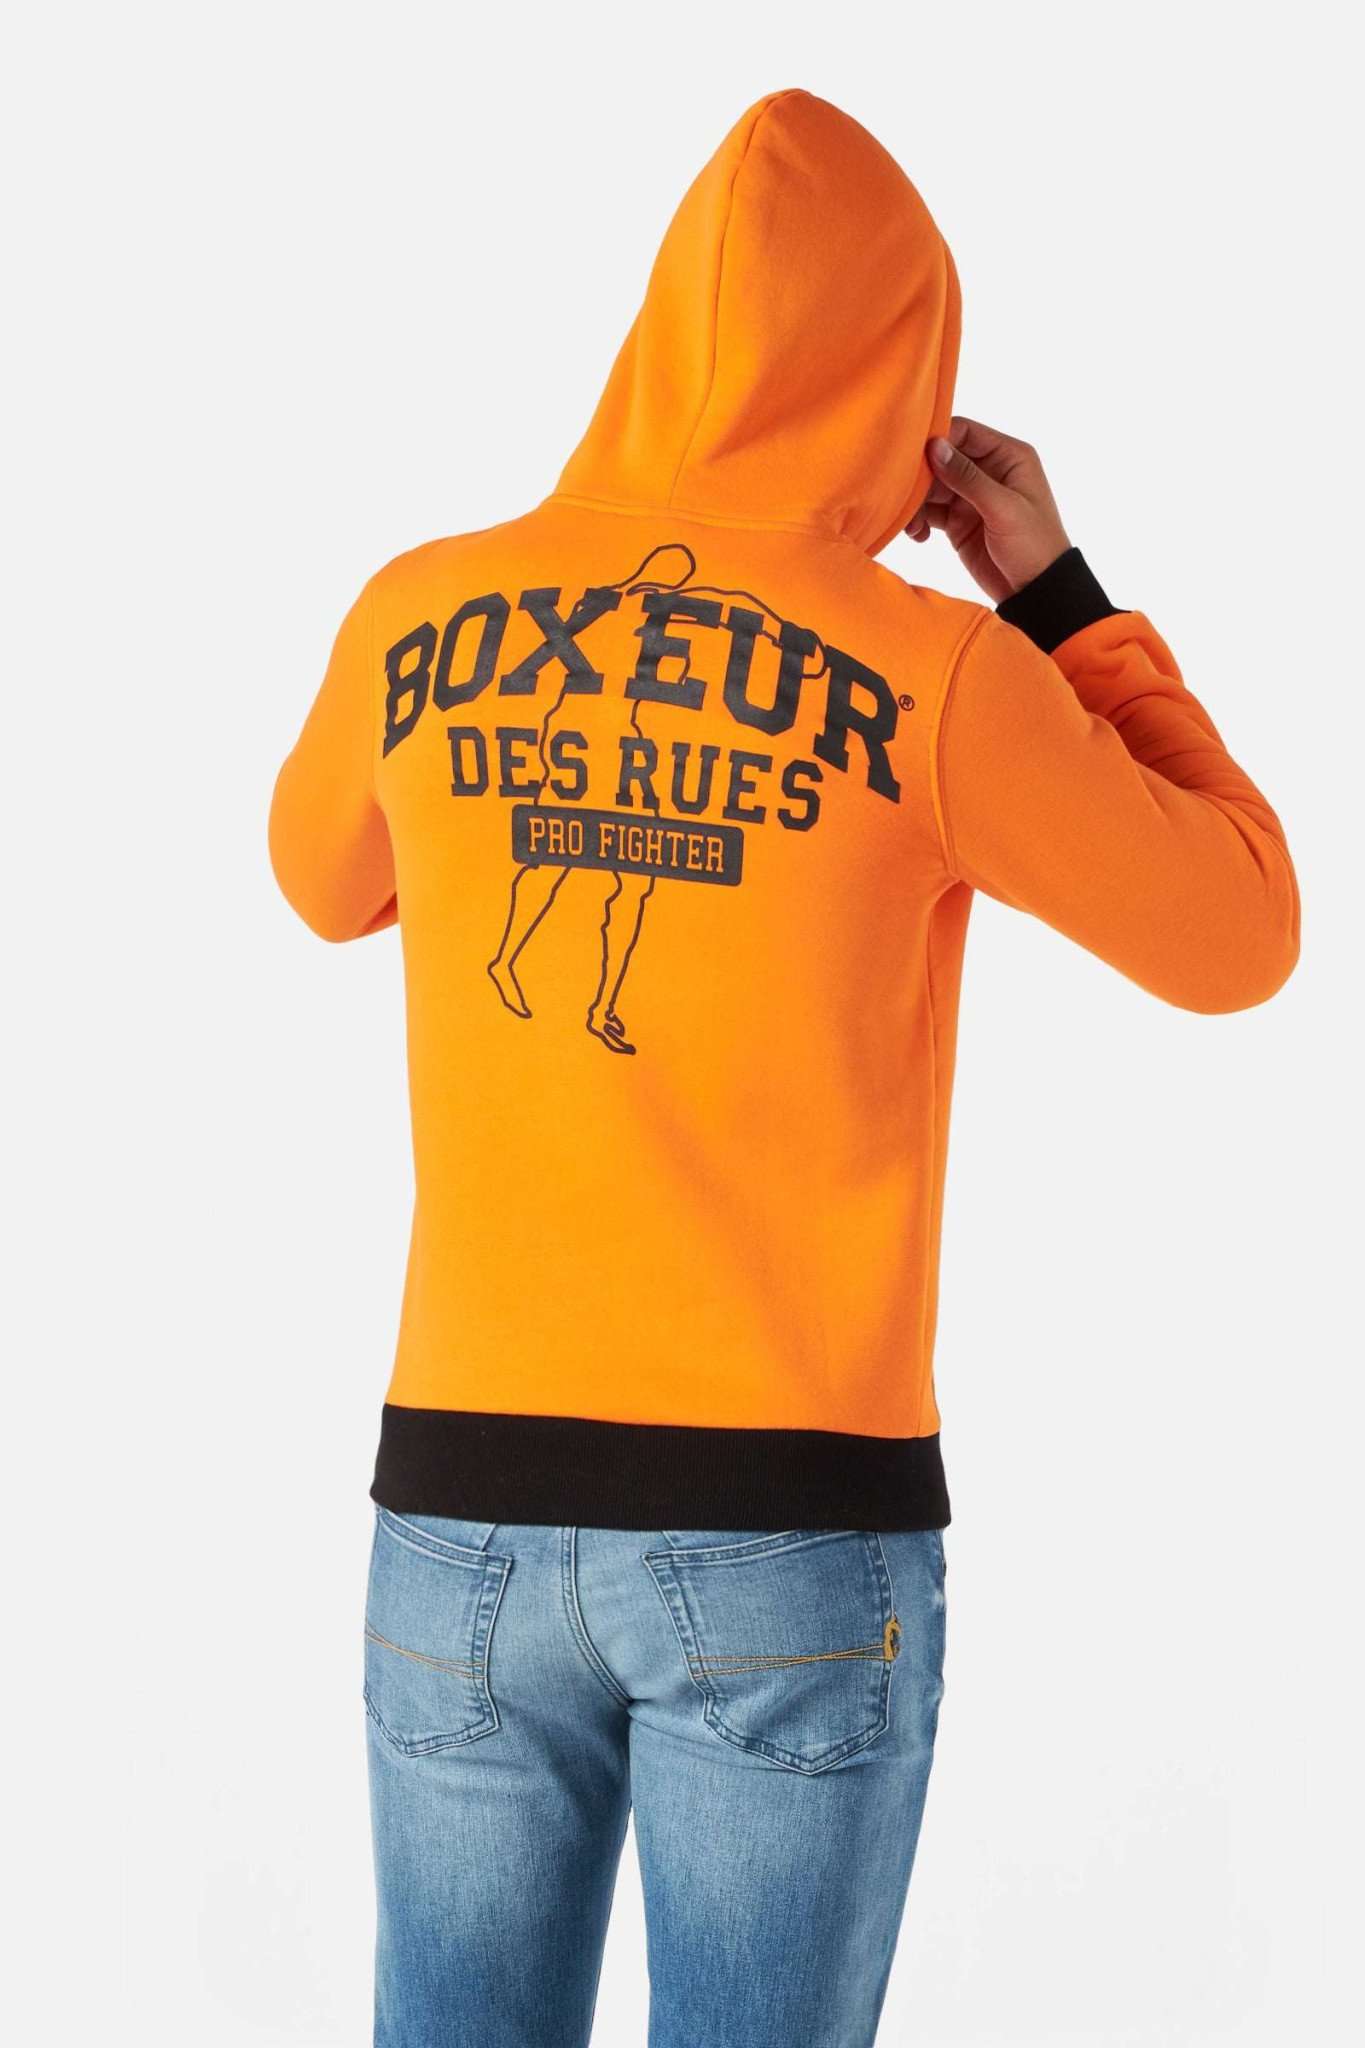 Man Hoodie Sweatshirt in Orange Kapuzenpullover Boxeur des Rues   